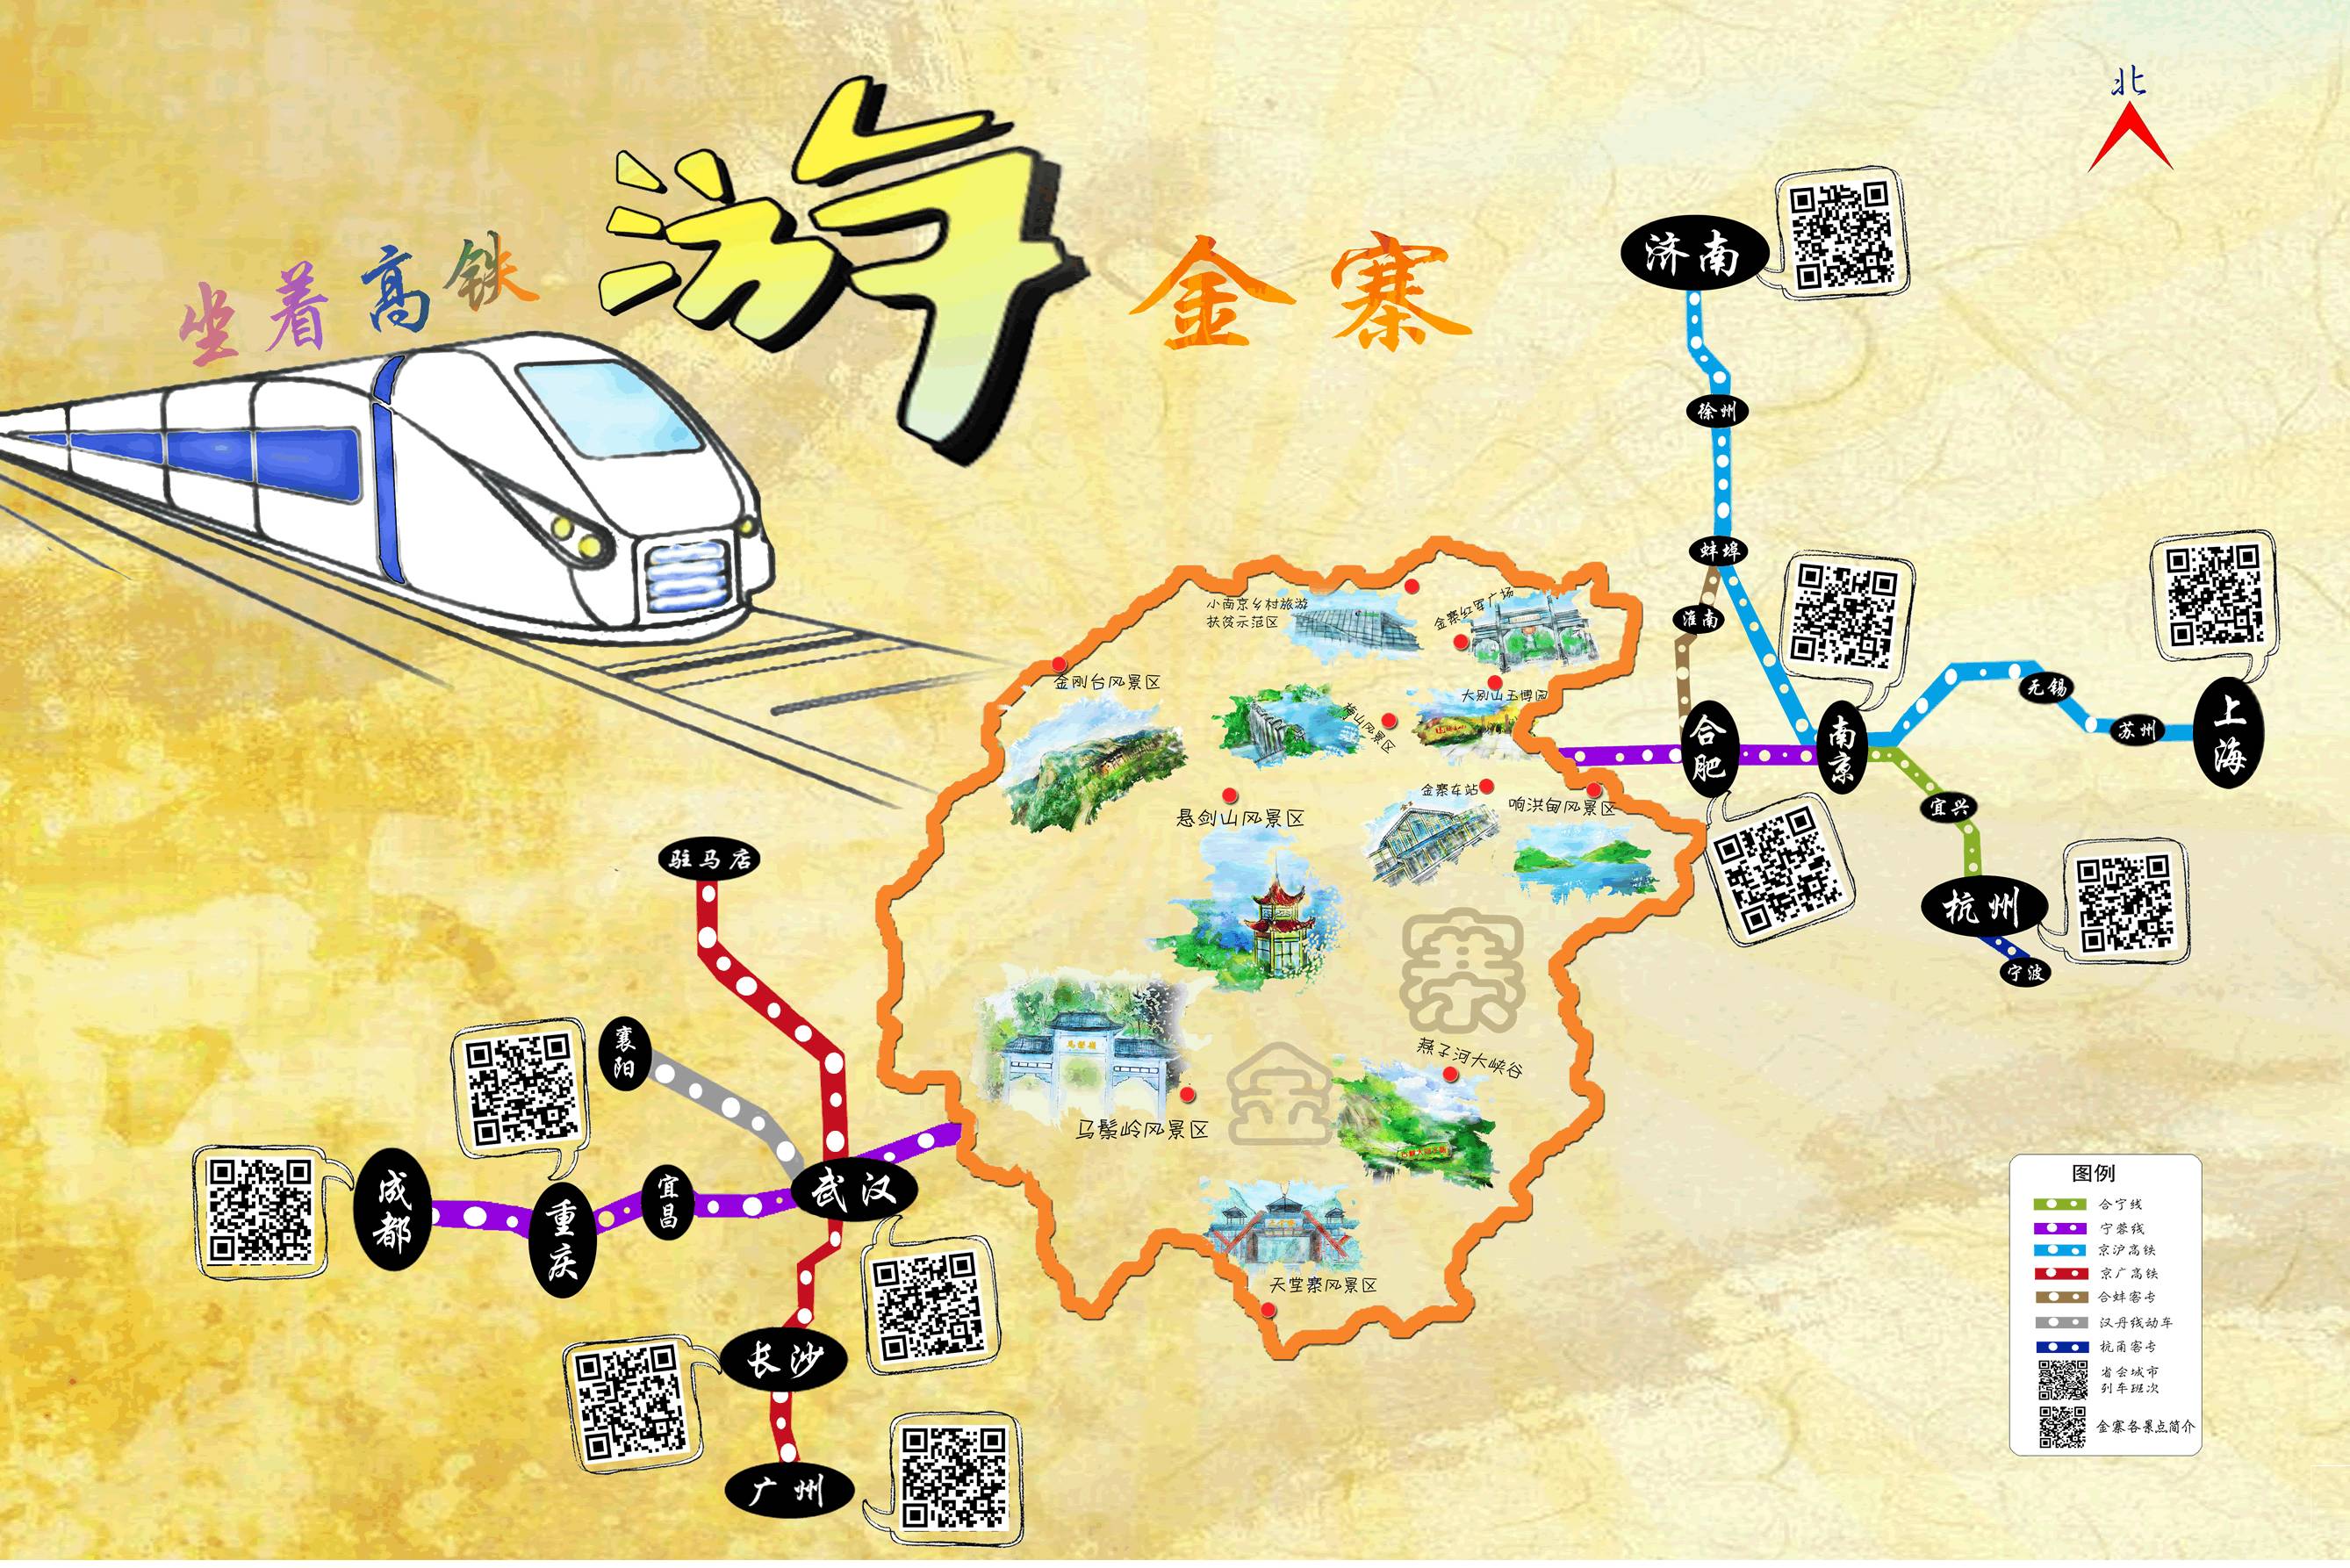 主办单位:金寨县旅游委员会   策划承办:安徽旅游在线